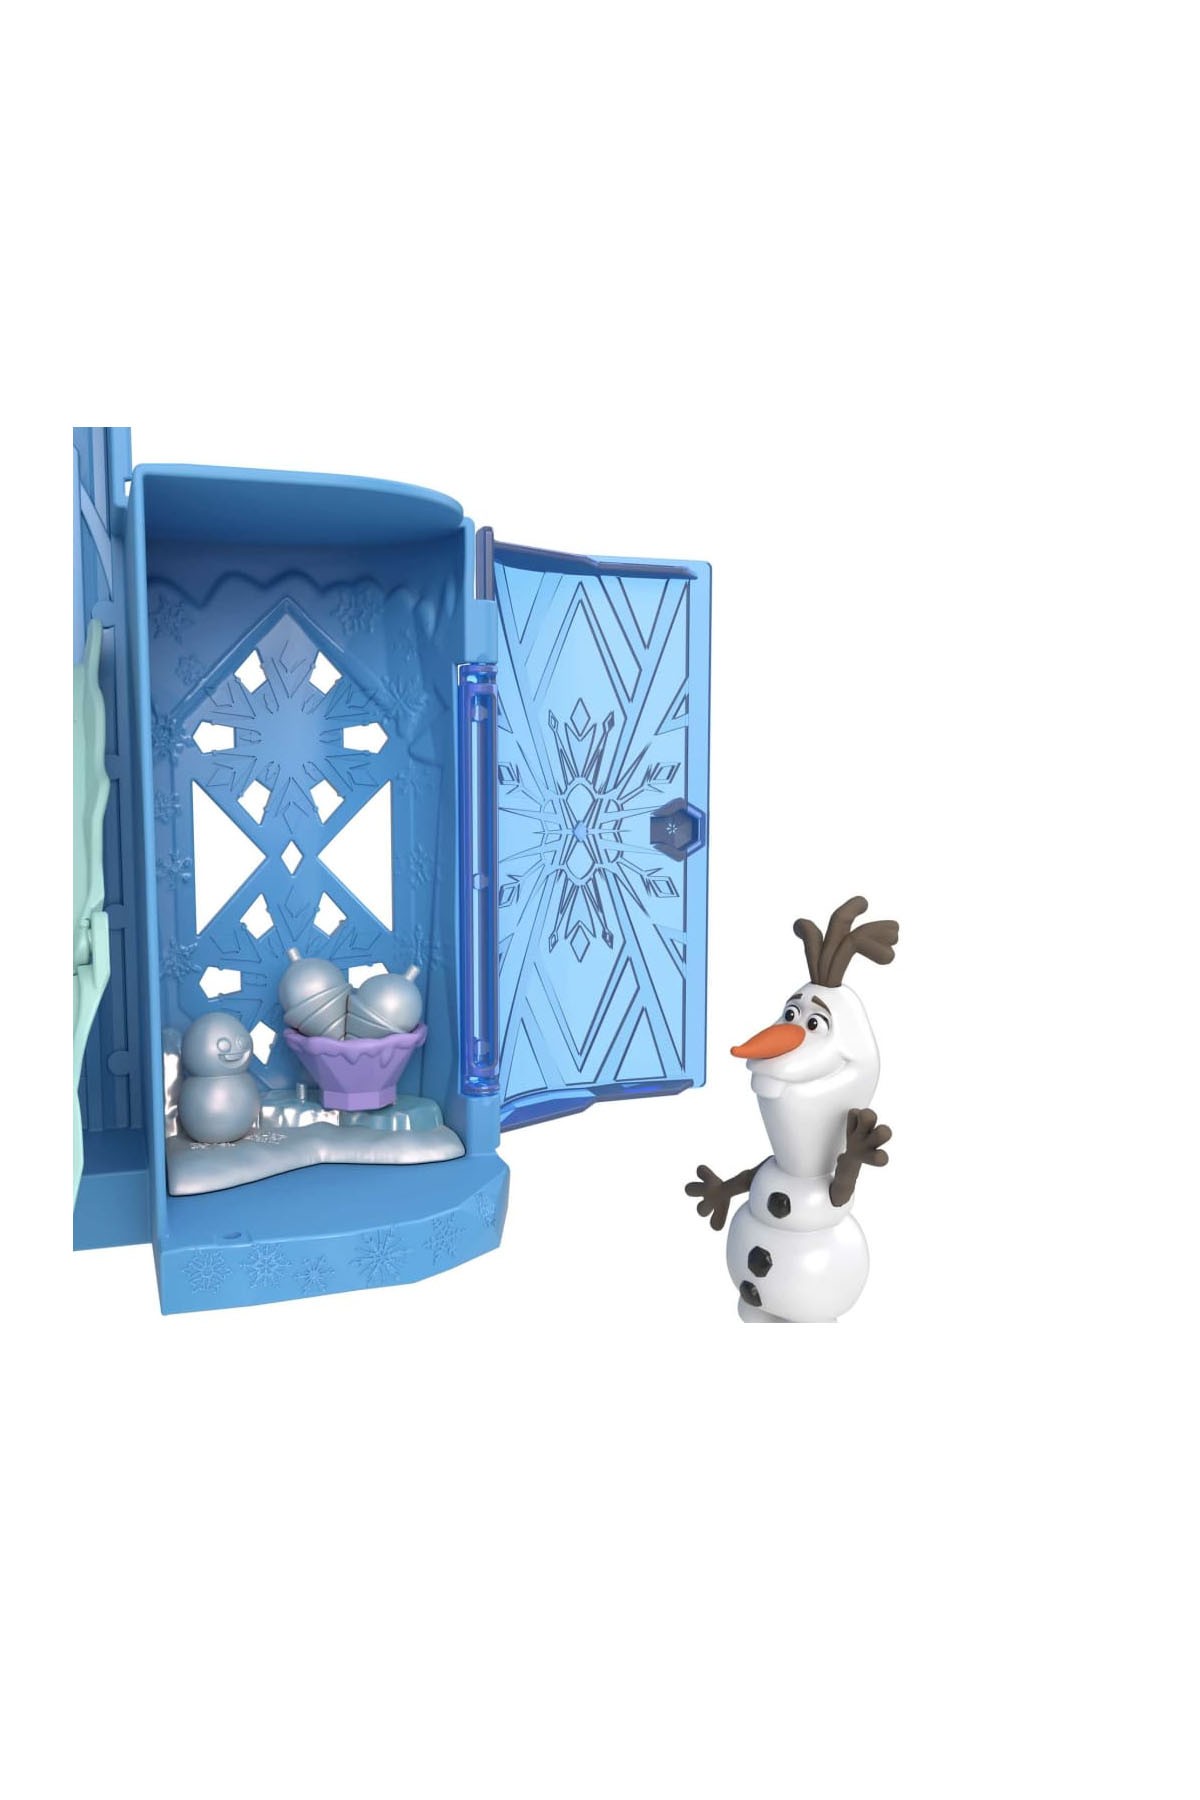 Frozen Disney Karlar Ülkesi Elsa ve Olaf'ın Şatosu Oyun Seti